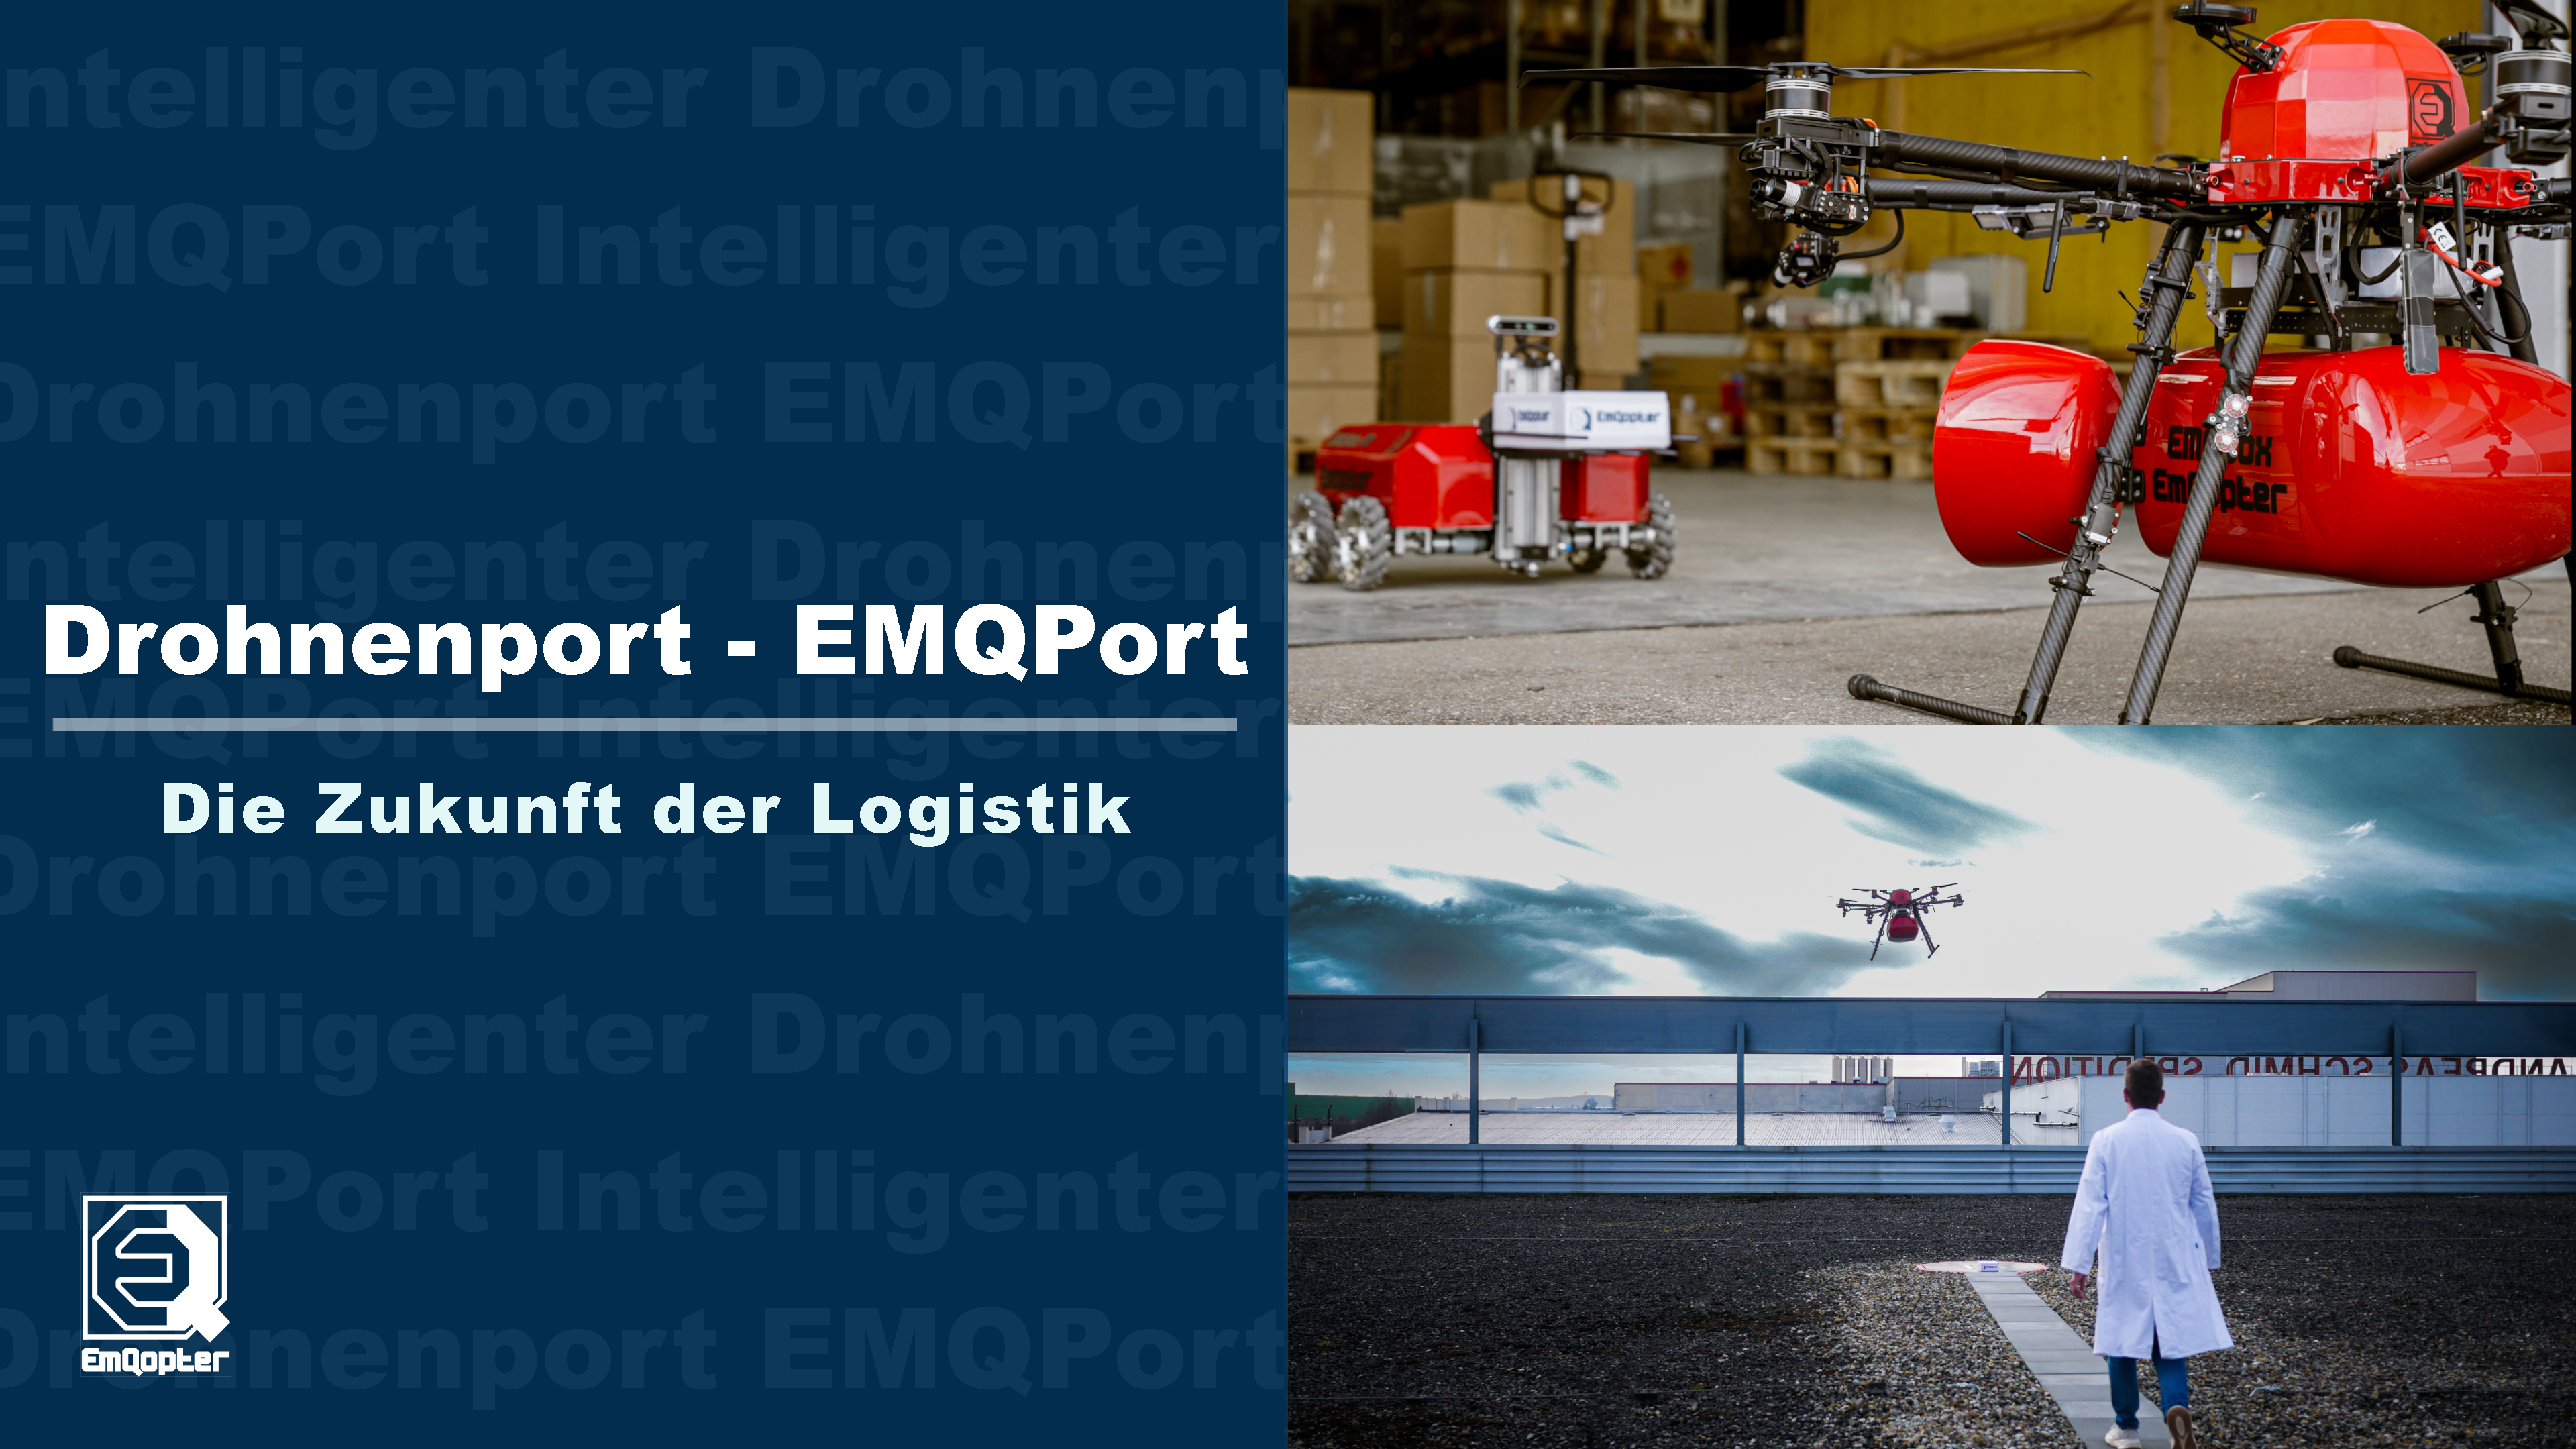 Der Drohnenport von Emqopter - Die Zukunft der Logistik